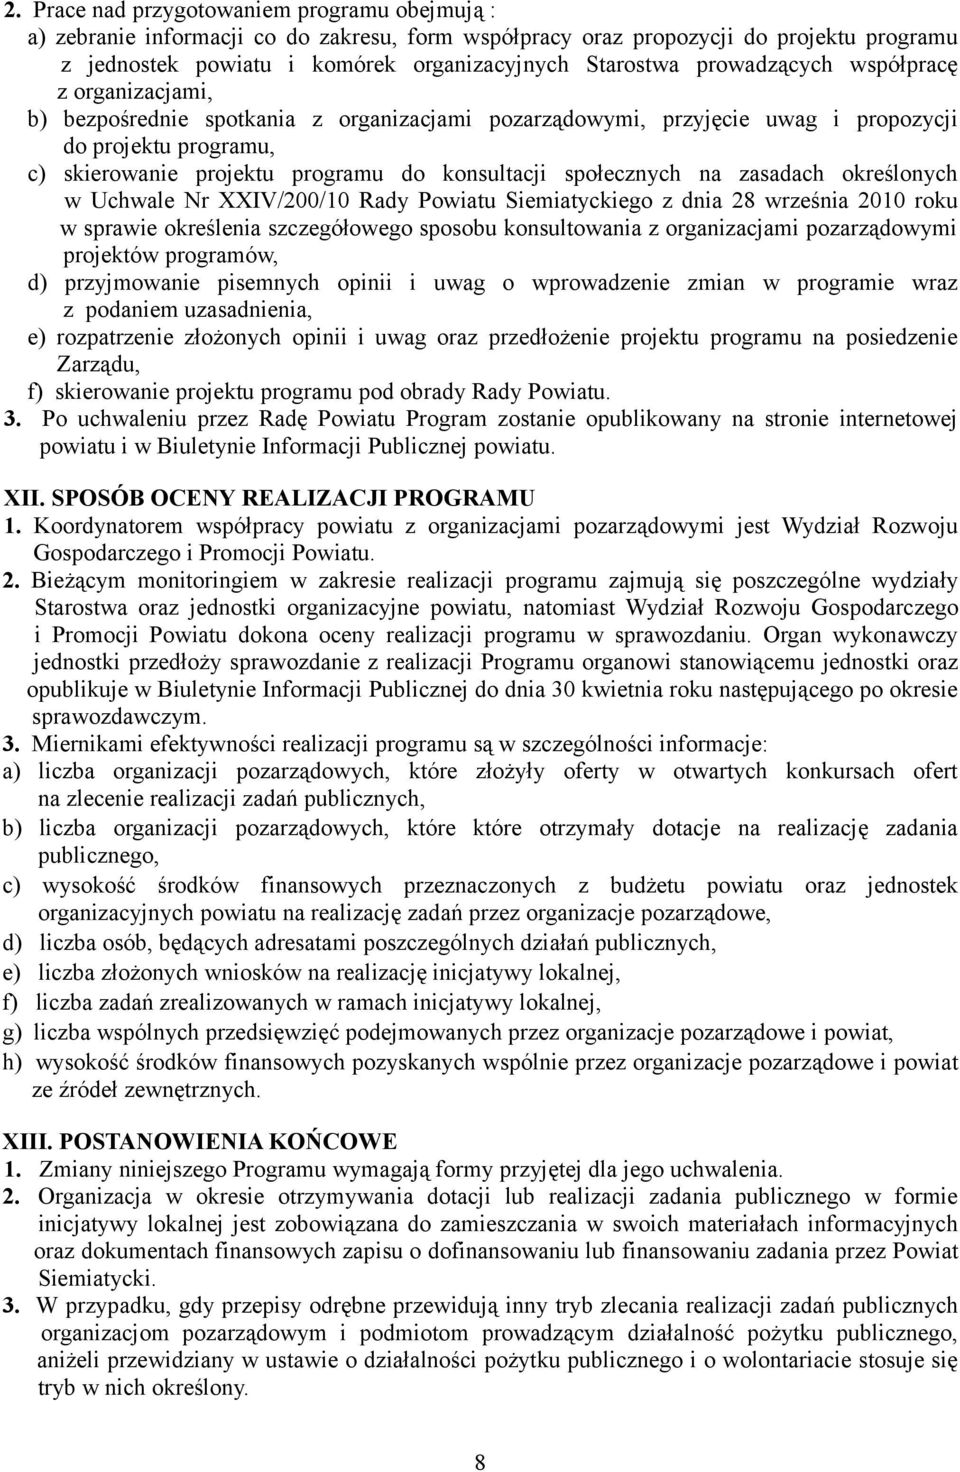 społecznych na zasadach określonych w Uchwale Nr XXIV/200/10 Rady Powiatu Siemiatyckiego z dnia 28 września 2010 roku w sprawie określenia szczegółowego sposobu konsultowania z organizacjami